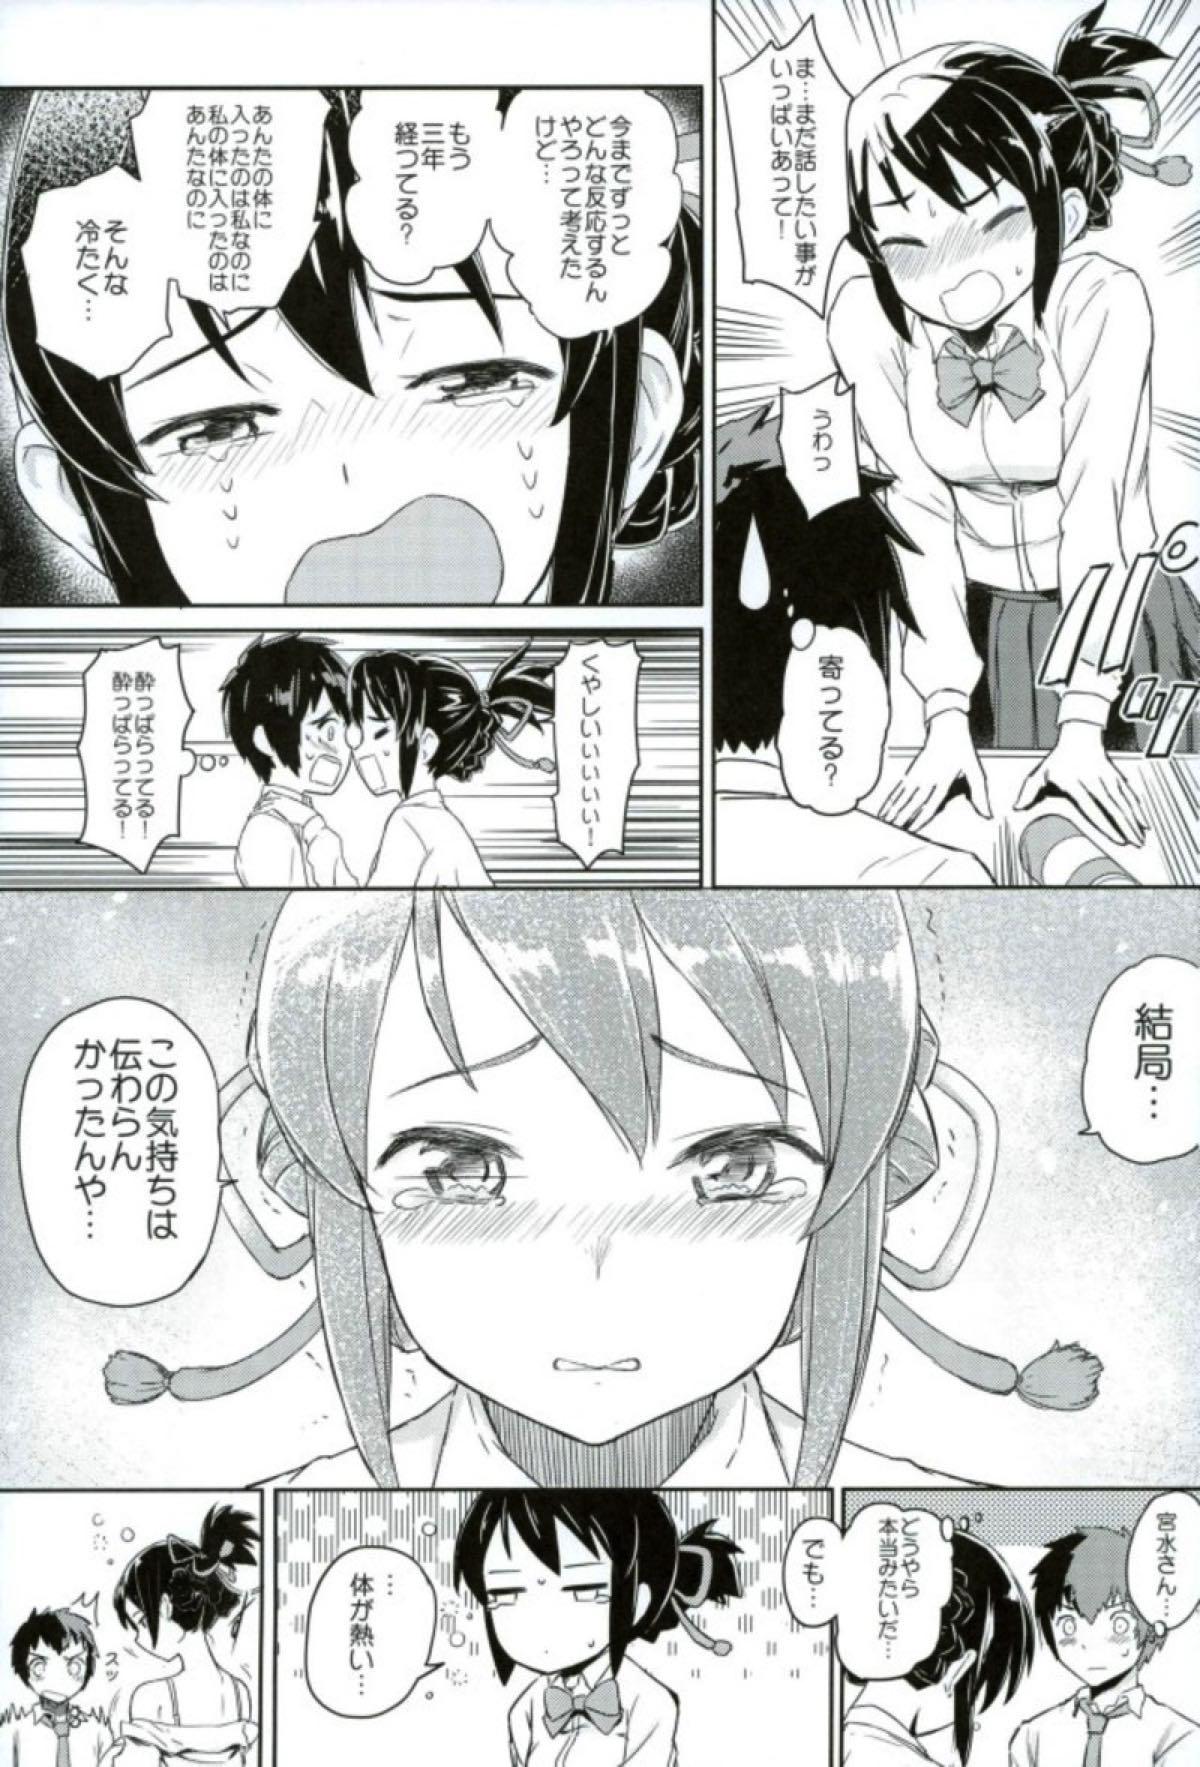 Gapes Gaping Asshole Kimi to Boku no Musubi - Kimi no na wa. Naked Sex - Page 4